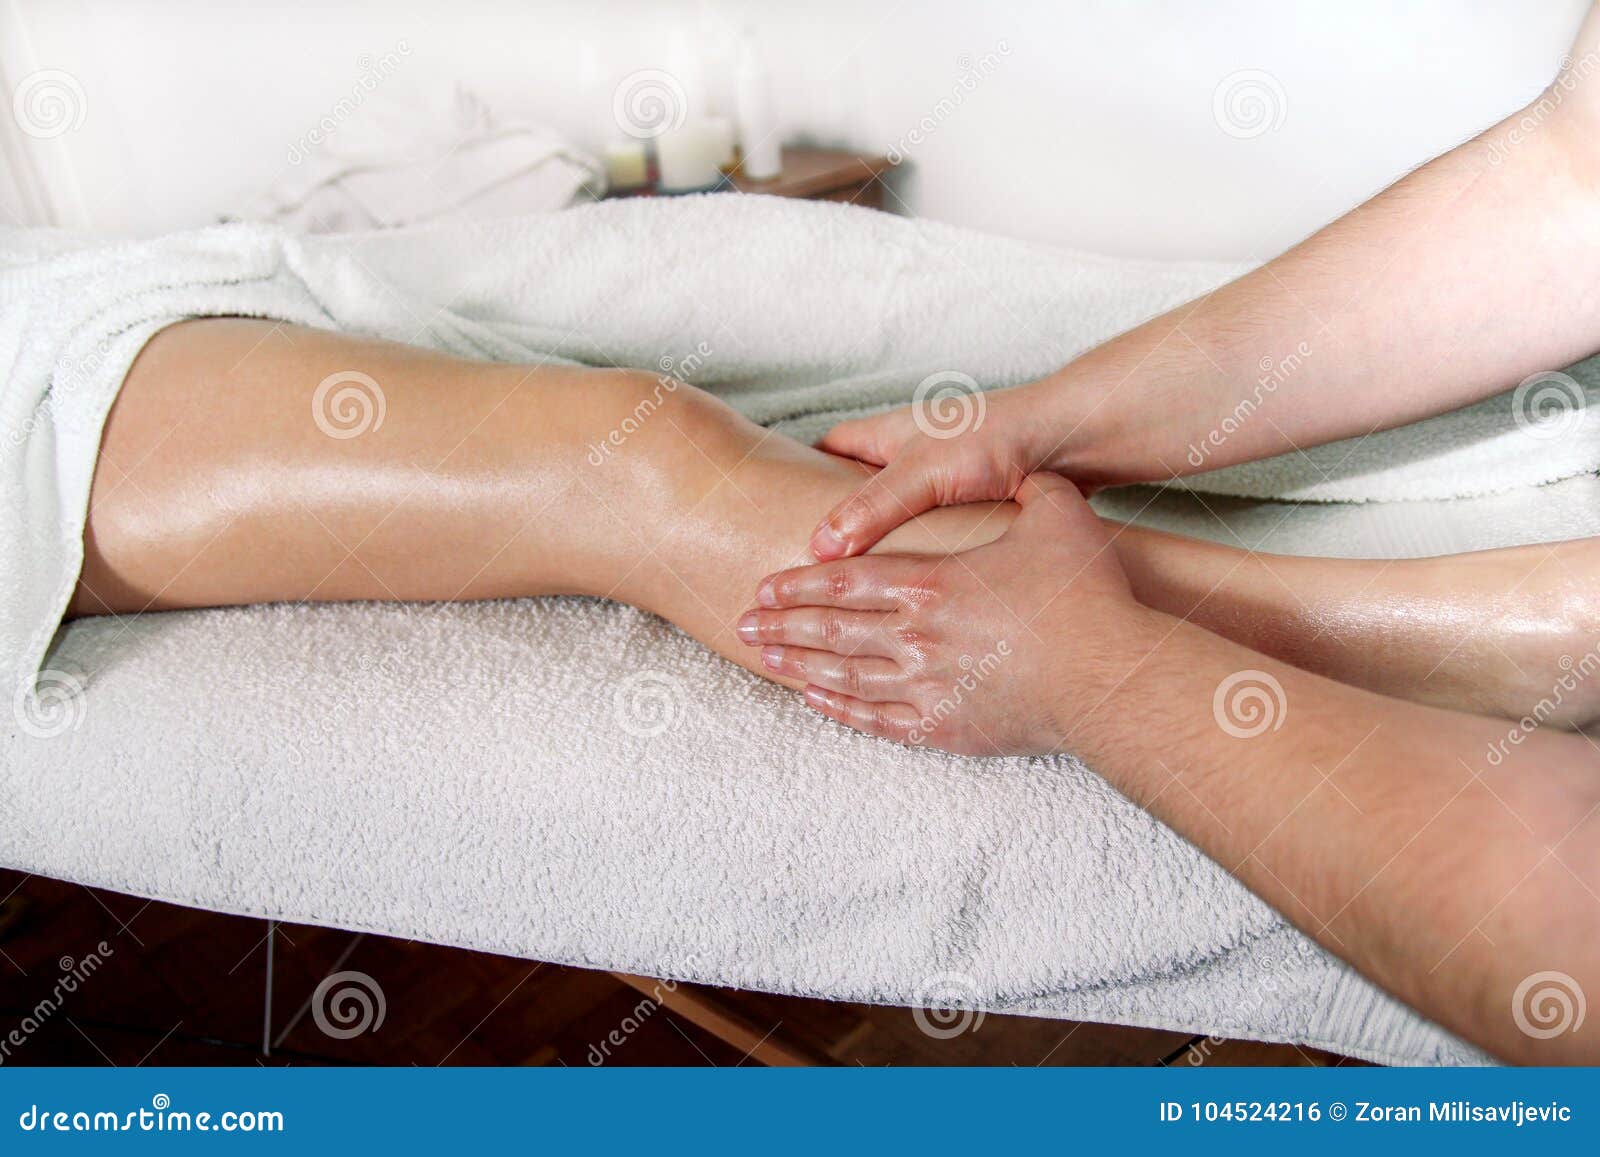 Fahrwerkbein-Massage Der männliche Masseurtherapeut übergibt das Handeln, Druck anwendend knetend auf weiblicher Kalbbeinmassage Berufsmasseuse, die Fuß des Mädchens massiert Frau, die Sportfußmassage im Badekurort-Salon hat